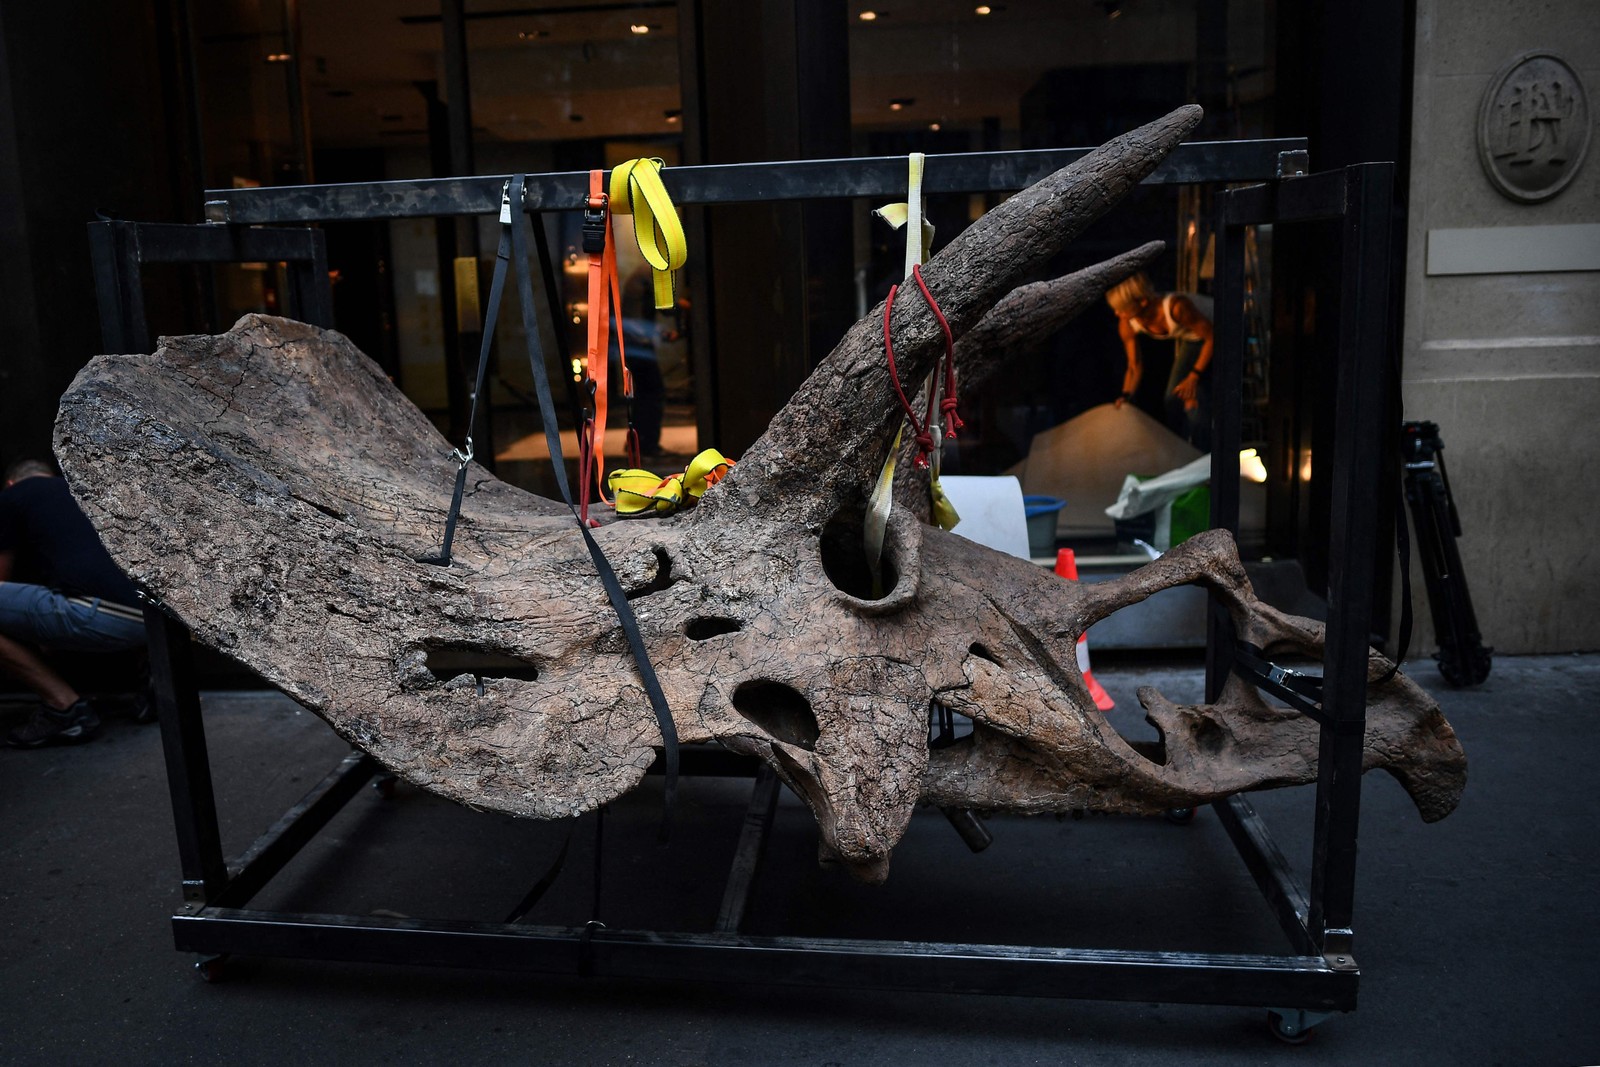 Crânio de um tricerátopo sendo levado para uma galeria onde será exposto antes de sua venda em leilão na casa de leilões Drouot. em outubro. - "Big John", o maior tricerátopo conhecido, com mais de 66 milhões de anos e um esqueleto de 8 metros de comprimento, está em exibição em Paris até 20 de outubro, quando será leiloadoAFP